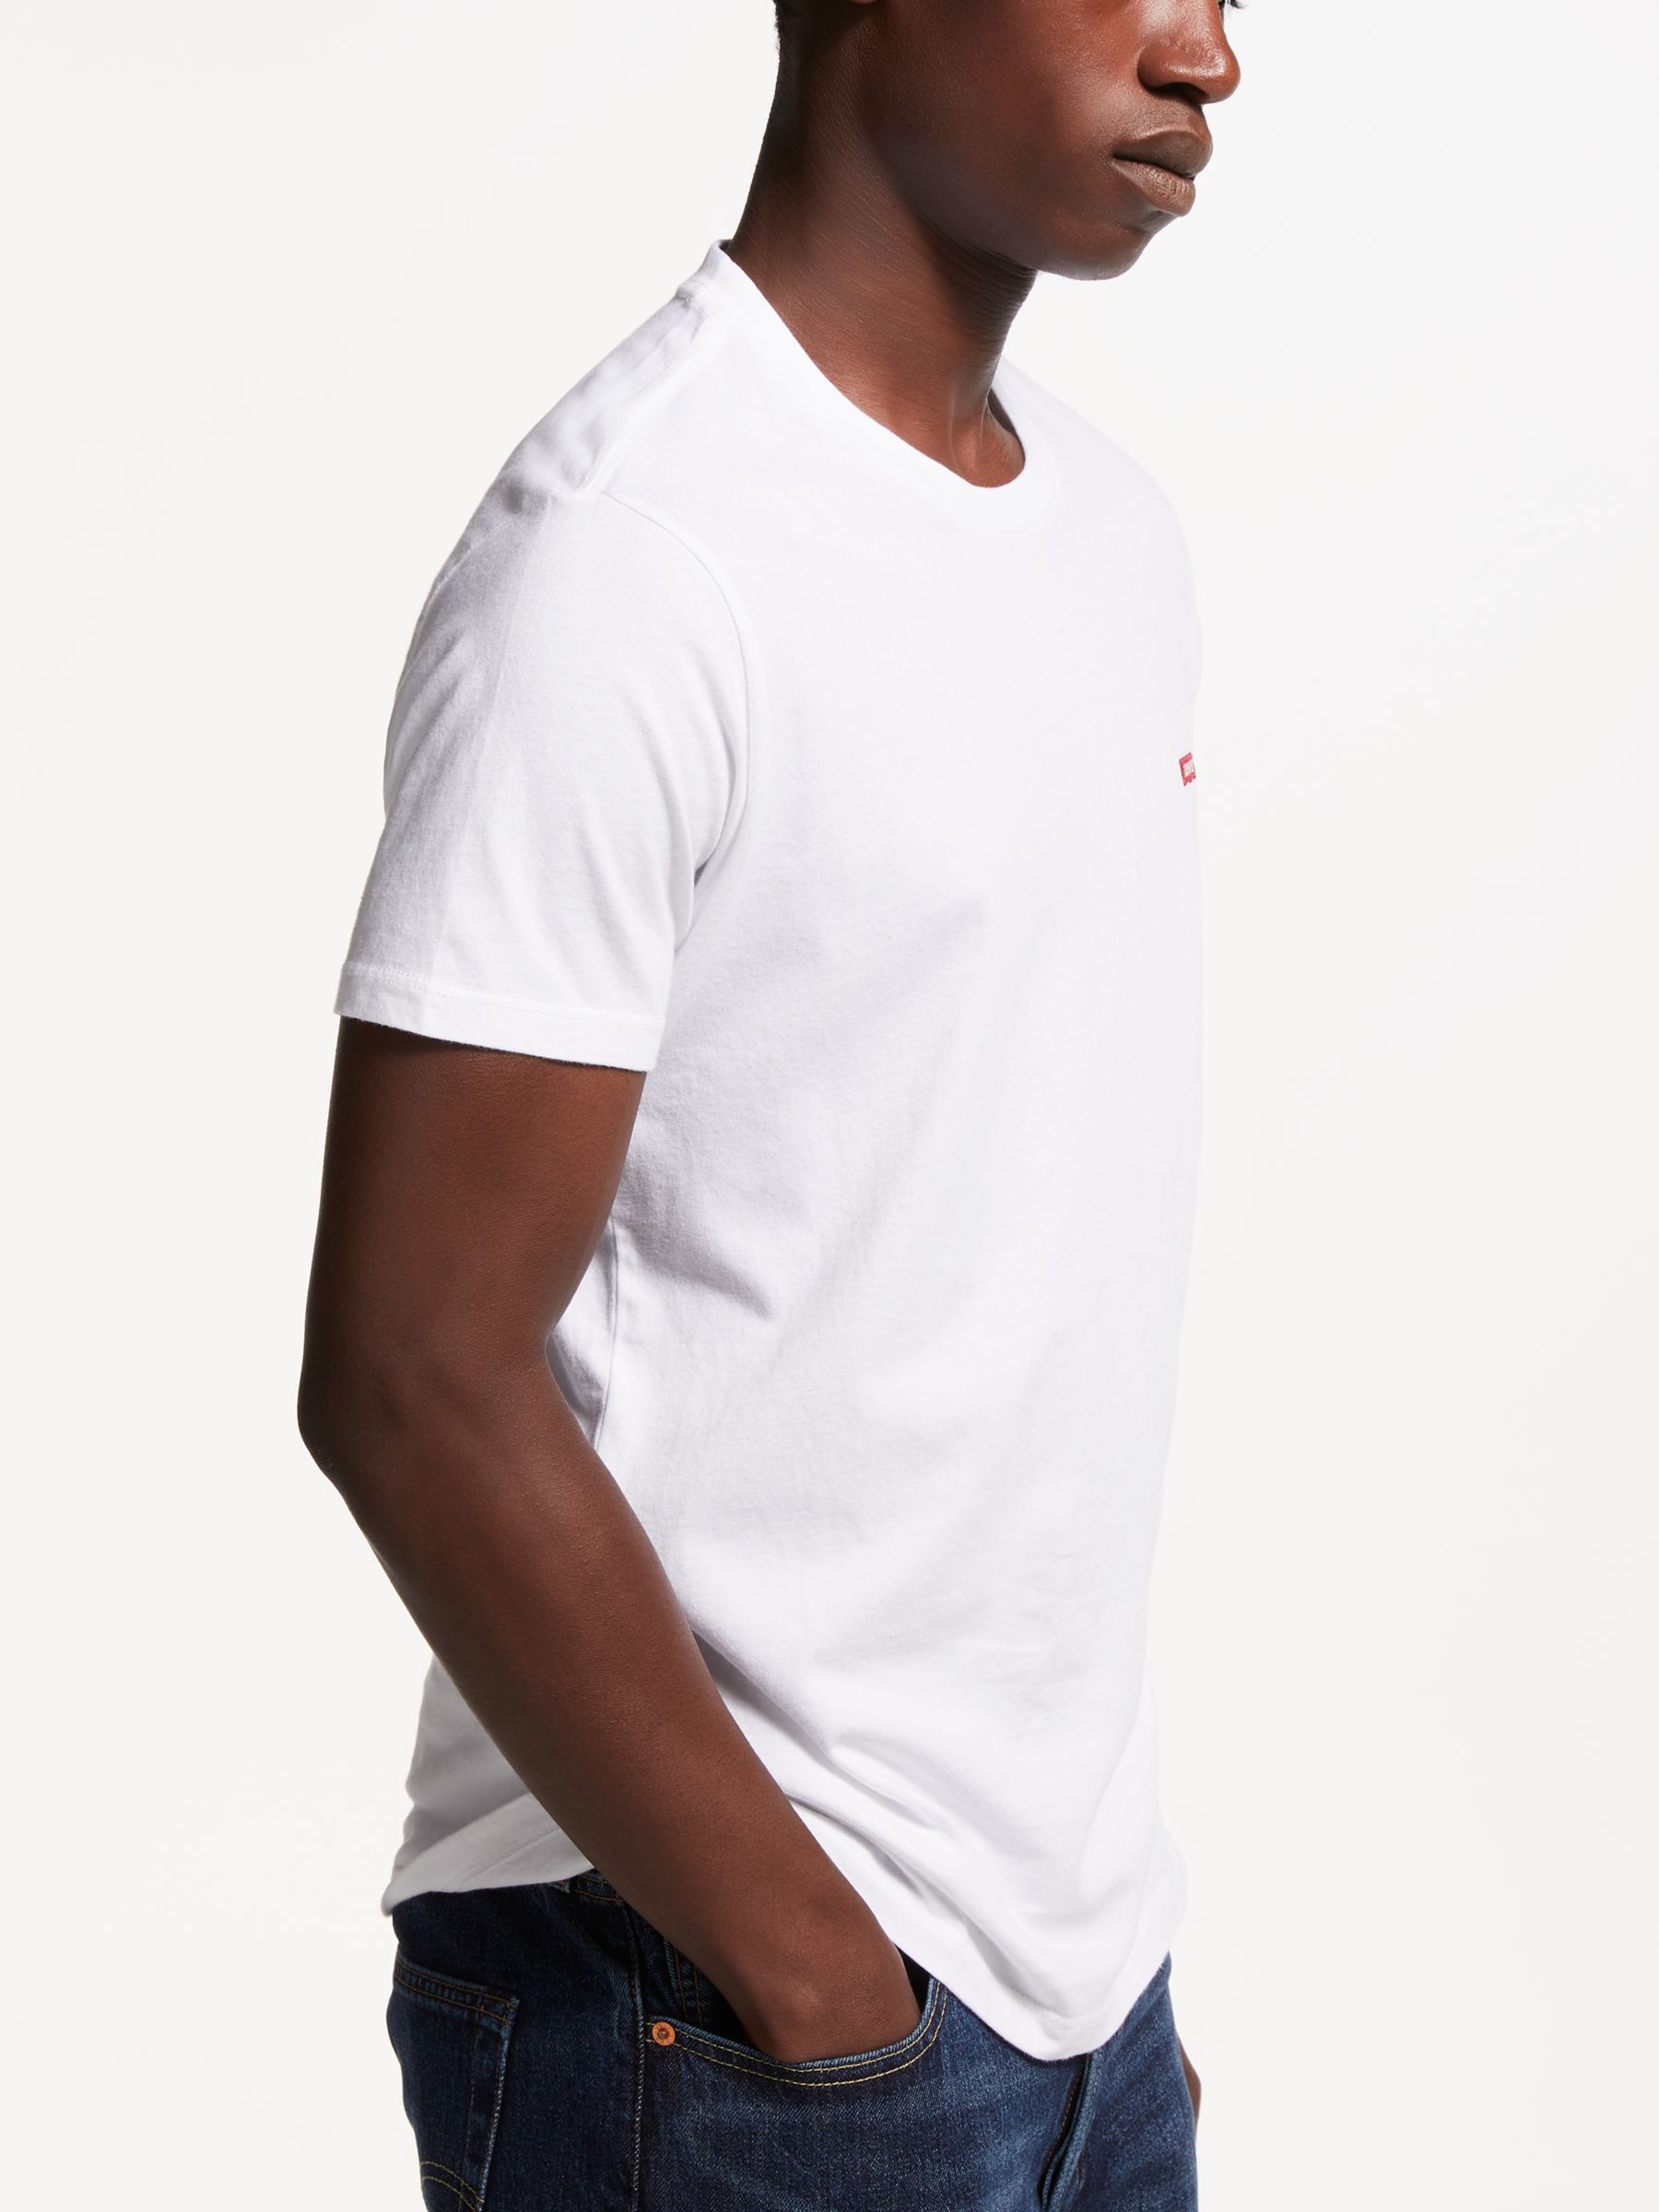 Levi's Original T-Shirt, White, S